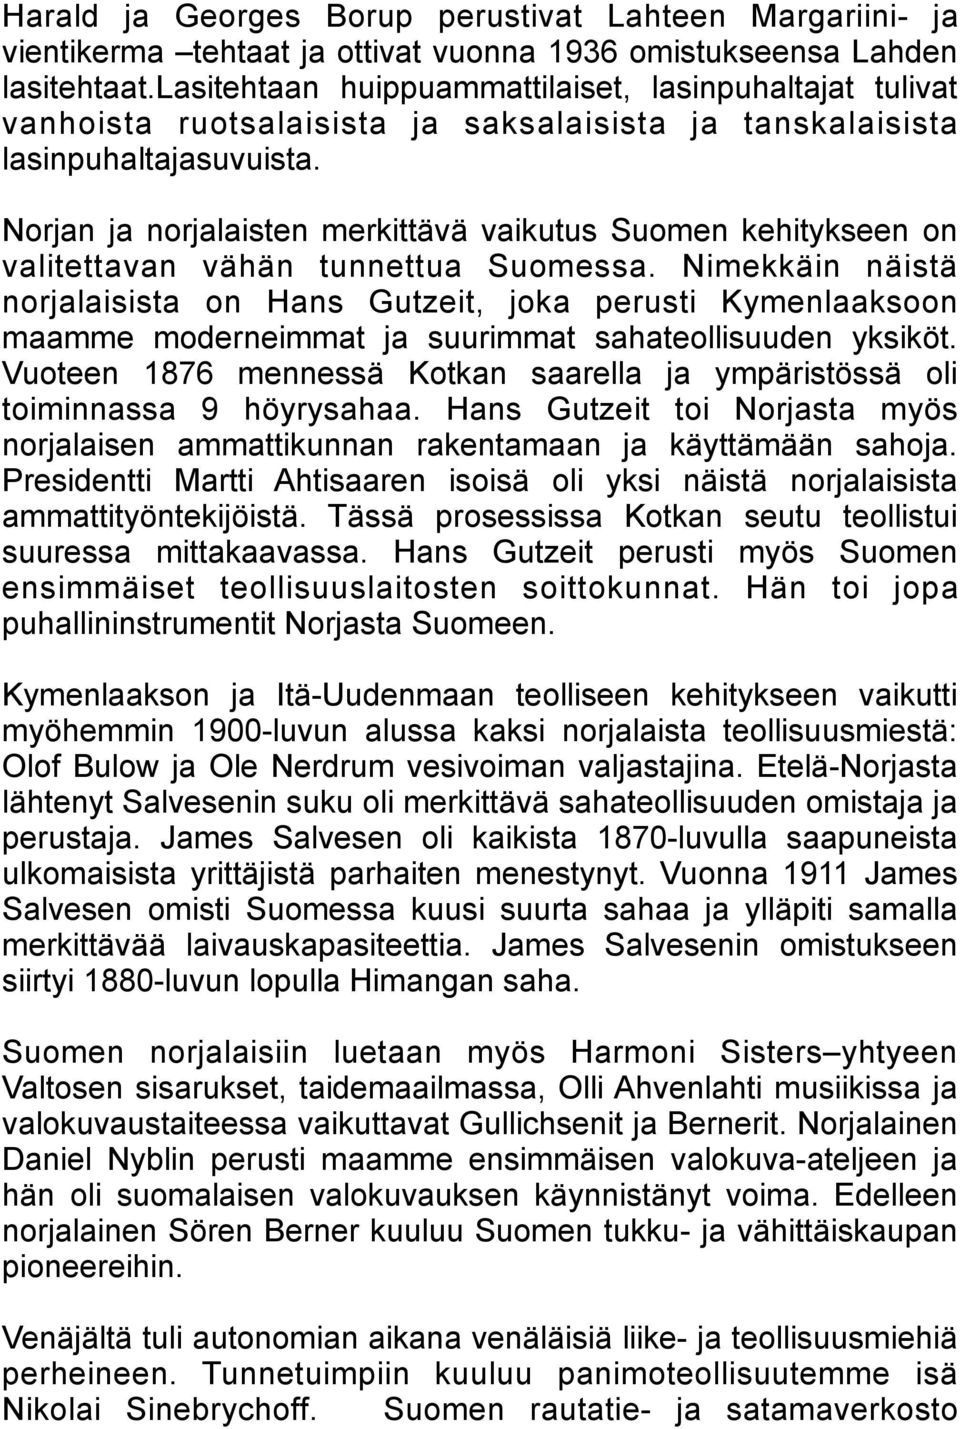 Norjan ja norjalaisten merkittävä vaikutus Suomen kehitykseen on valitettavan vähän tunnettua Suomessa.